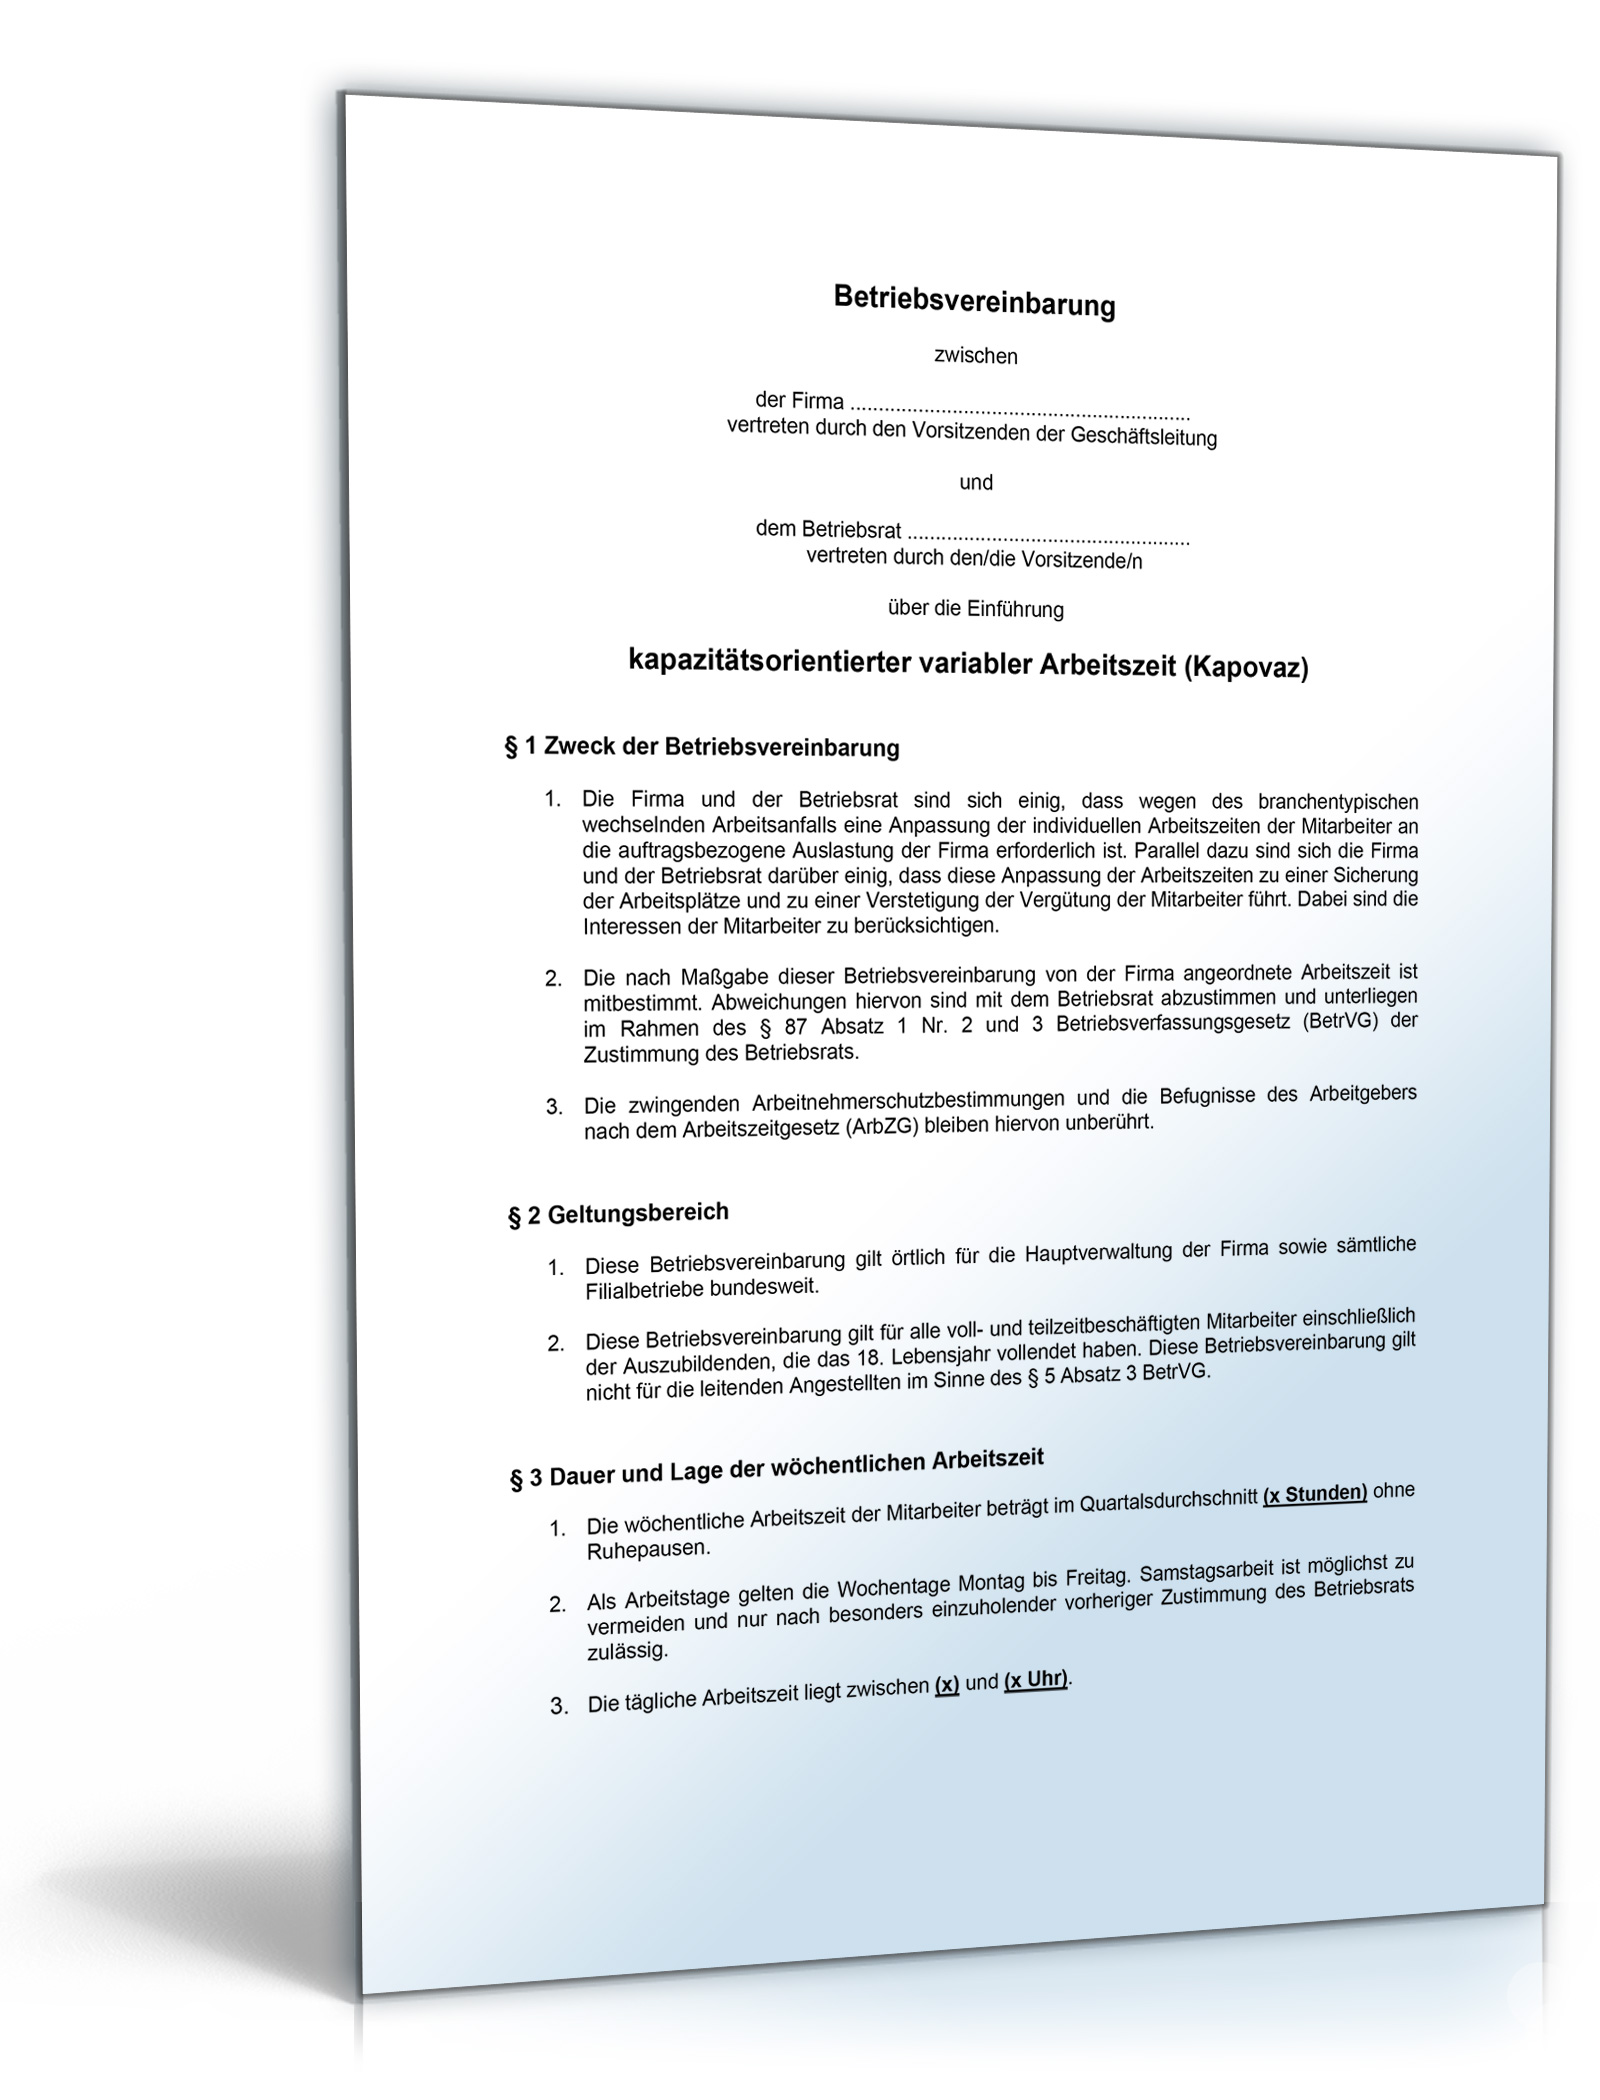 Betriebsvereinbarung über kapazitätsorientierte variable Arbeitszeit (Kapovaz) Dokument zum Download